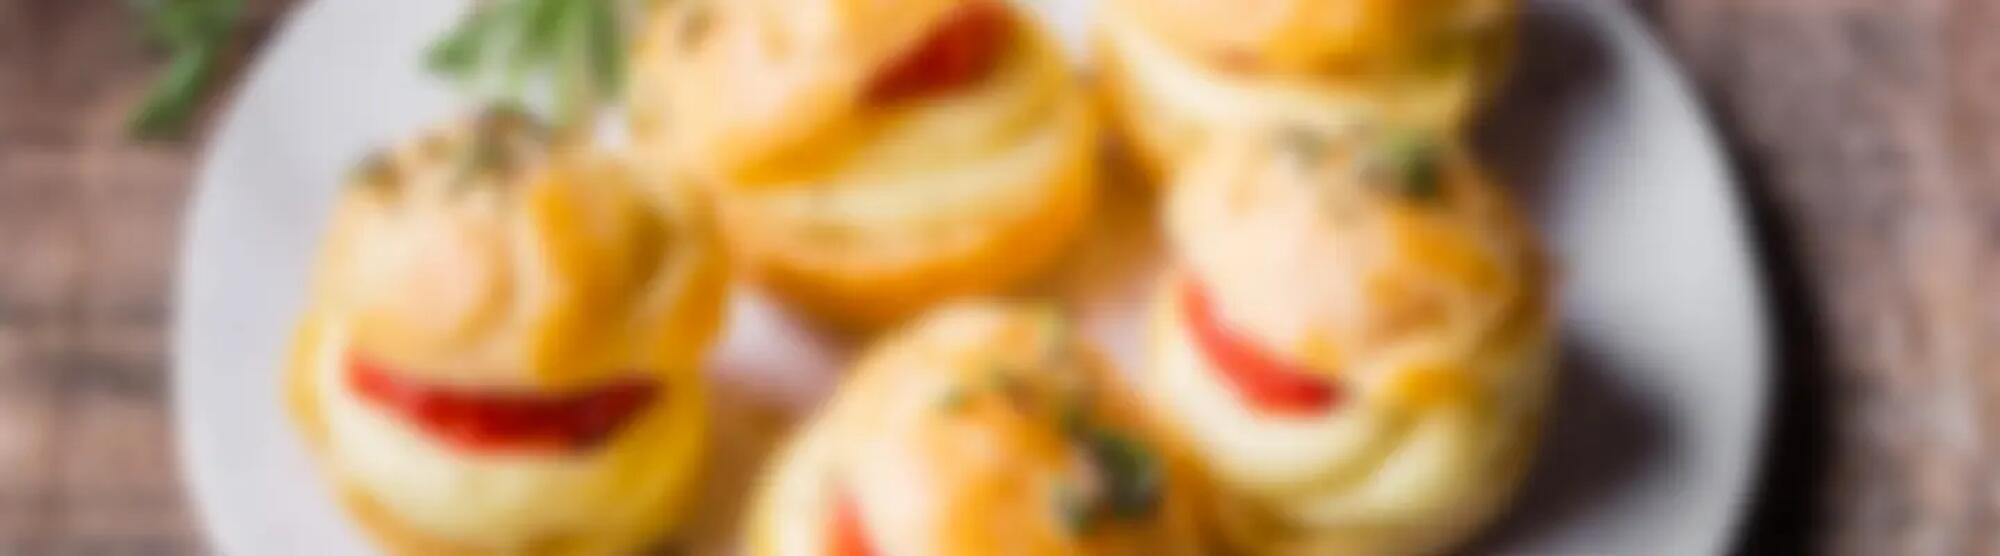 Recette : Petits choux aux tomates confites et crème de fromage à raclette